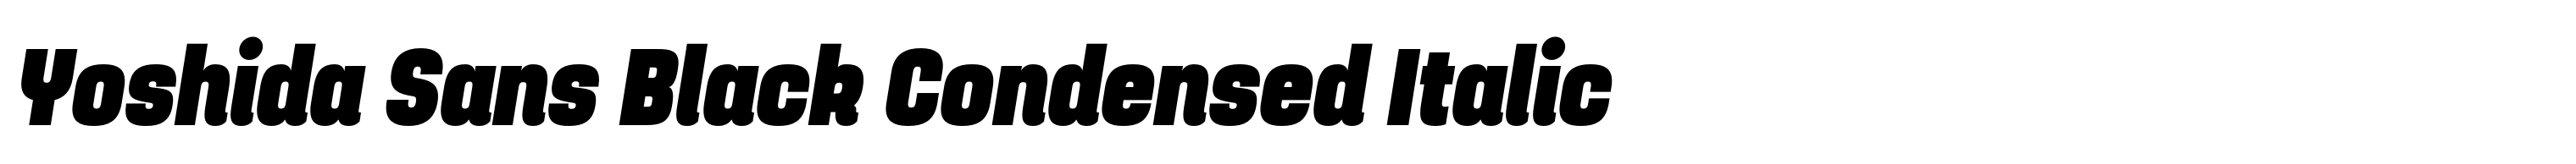 Yoshida Sans Black Condensed Italic